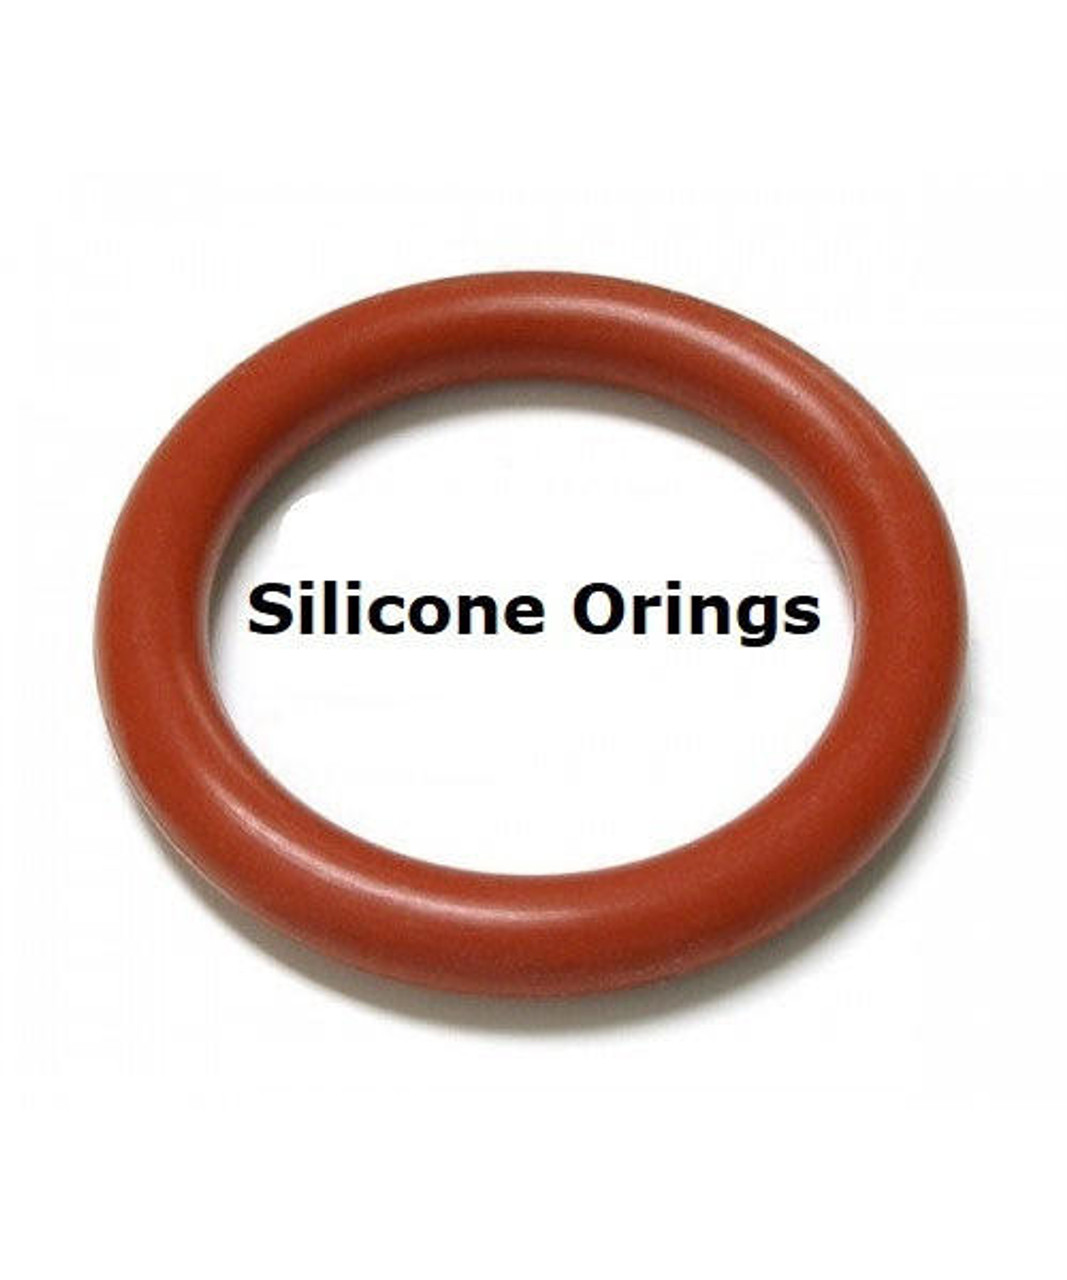 Silicone O-rings Size 220     Minimum 10 pcs